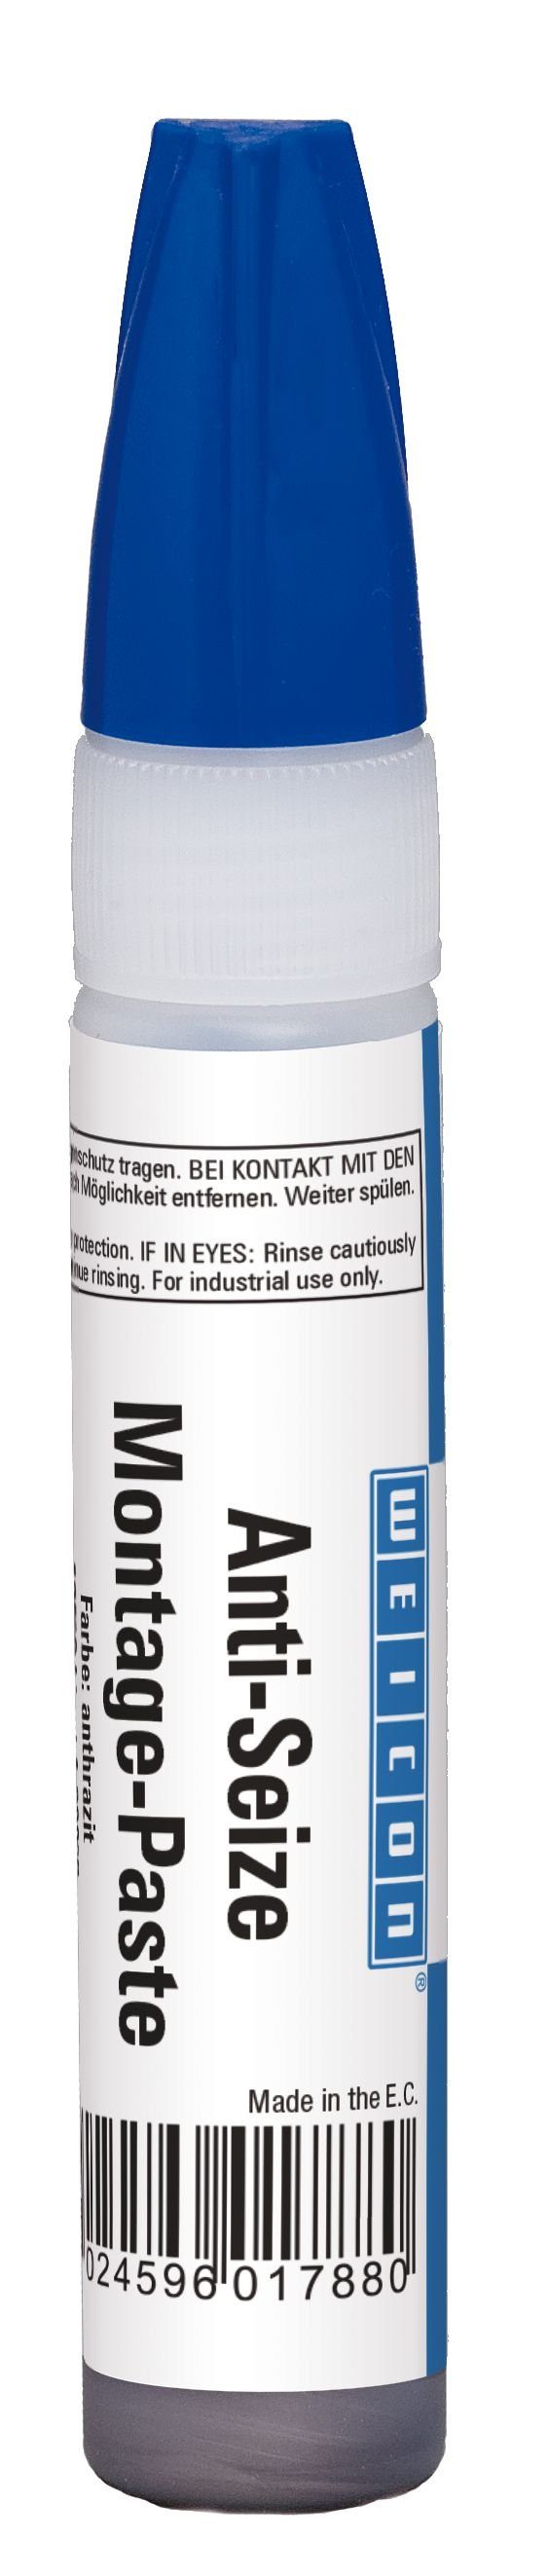 WEICON Montagepaste Anti-Seize Montagepaste, Schmier- und Trennmittelpaste, 30 g, Schutz-, Trenn- und Schmierstoff